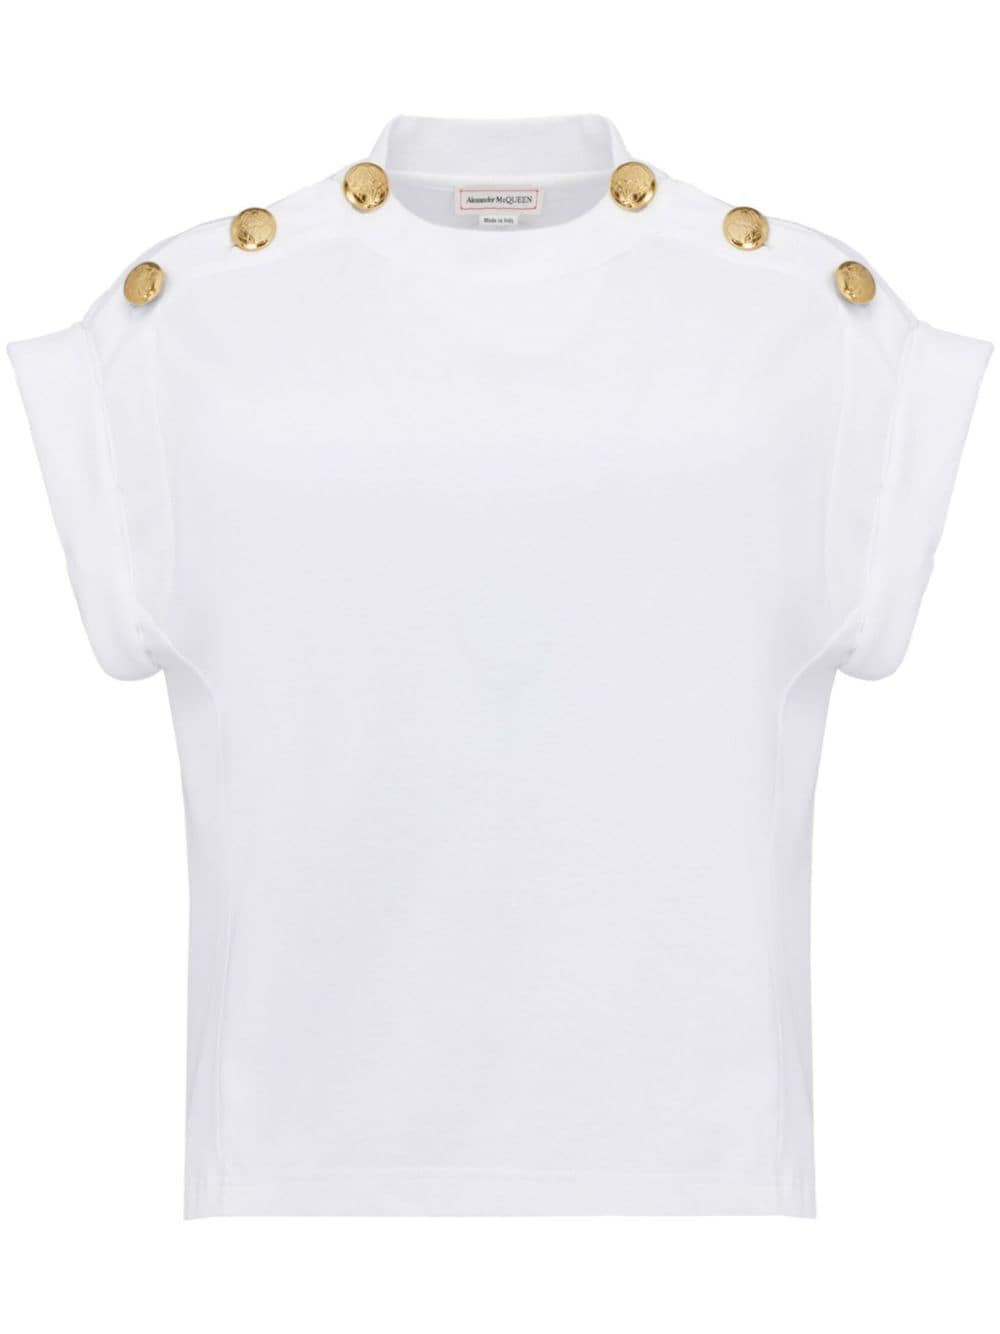 Seal button-embellished T-shirt<BR/><BR/><BR/>